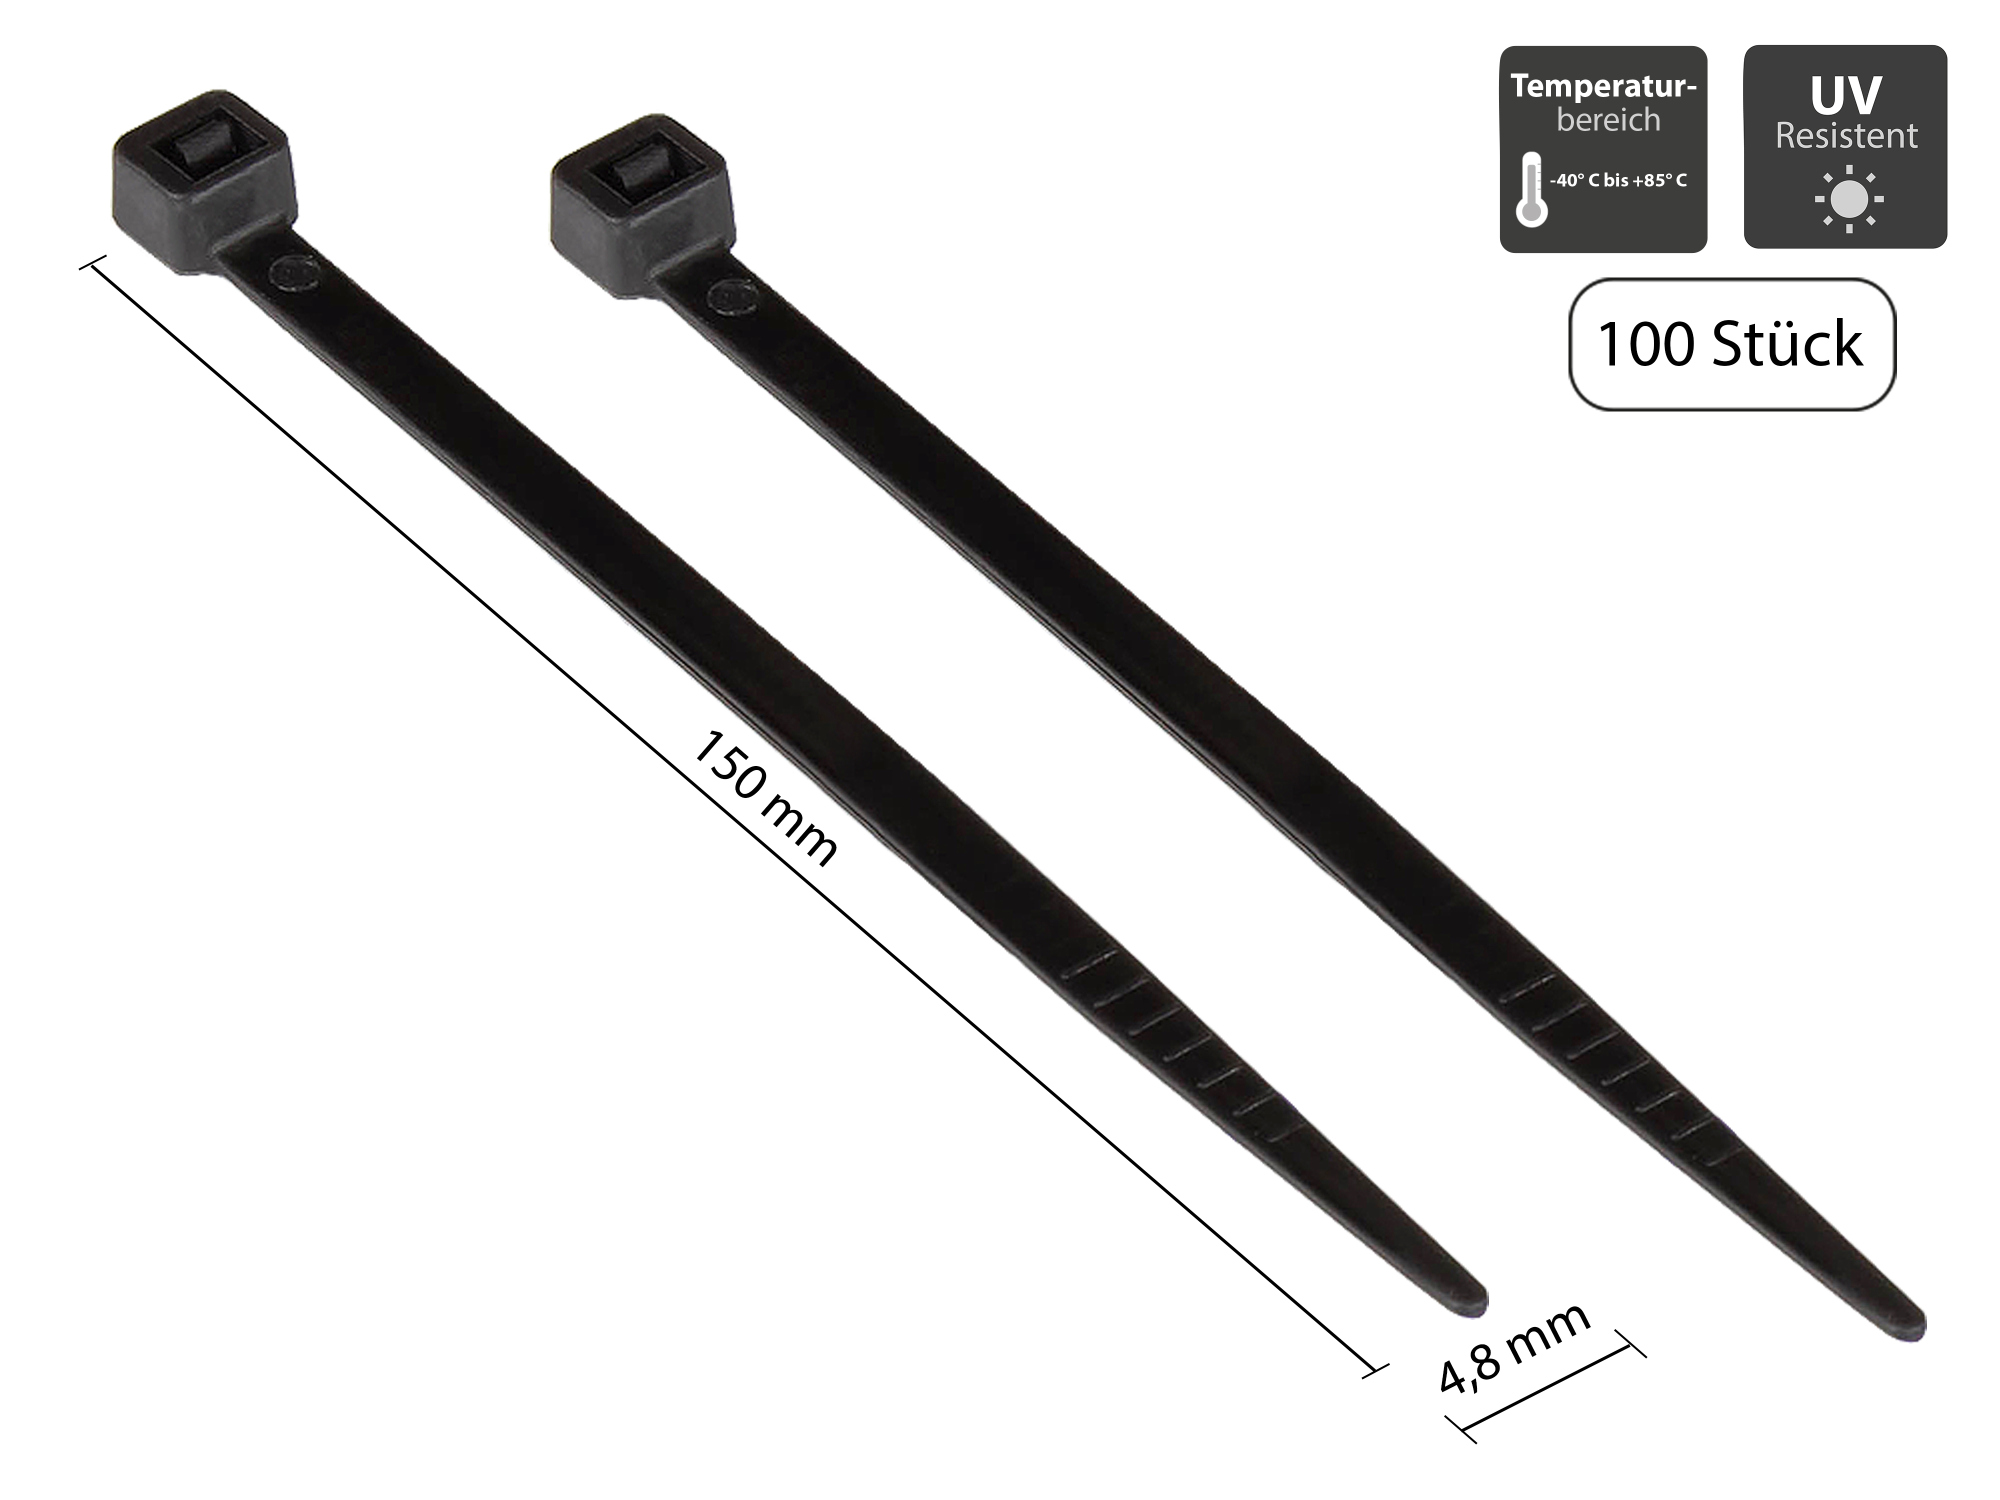 Kabelbinder 150 mm x 3,6 mm, schwarz, UL, UV-resistent, -40 °C bis +85 °C, 100 Stück